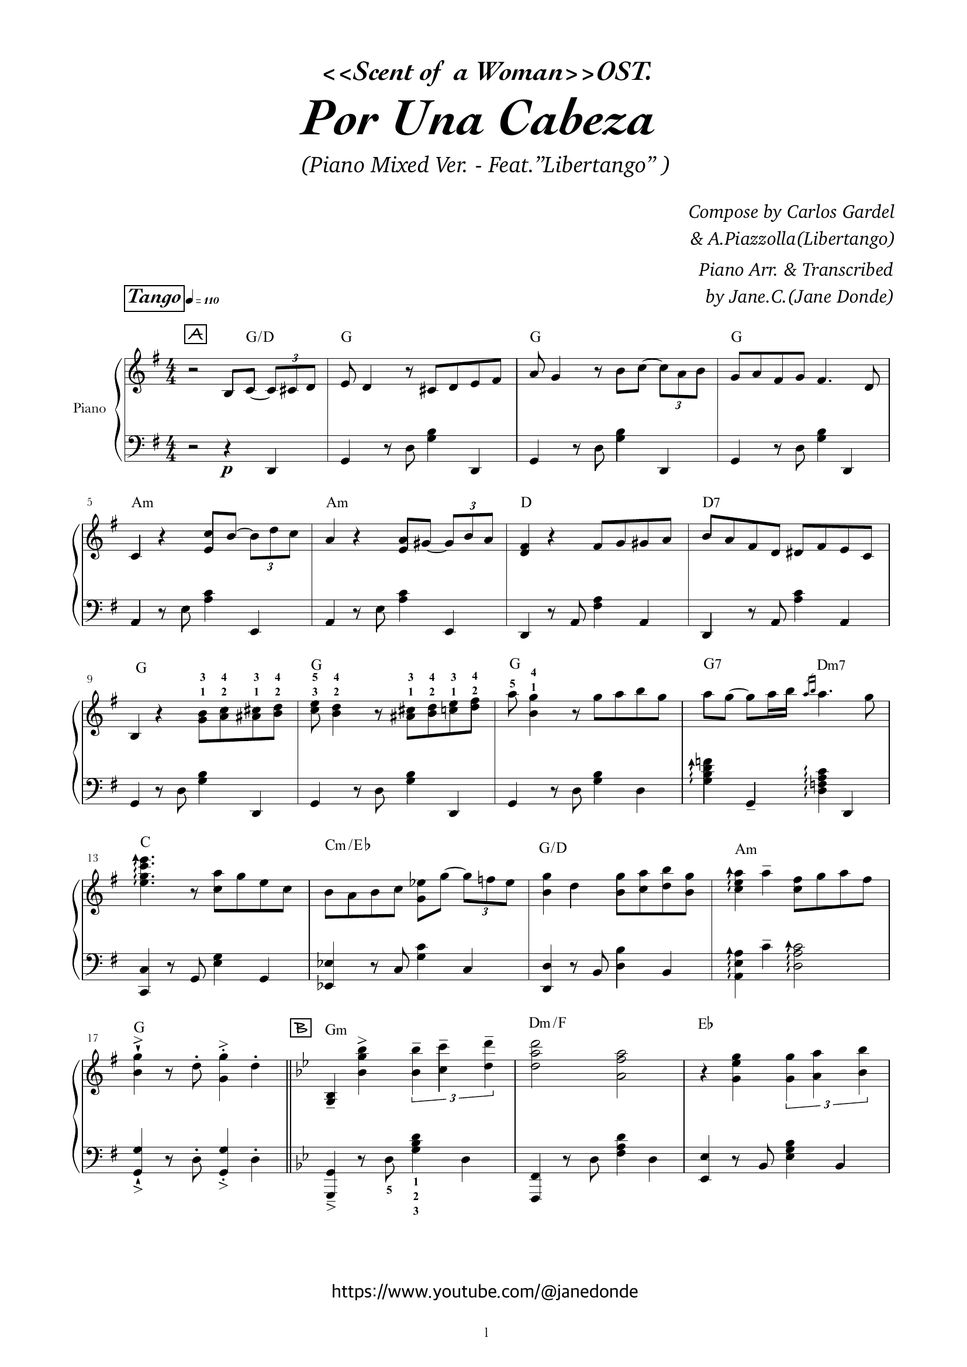 Carlos Gardel 、Astor Piazzolla(Libertango) - 【 Por Una Cabeza】- Piano Mixed Ver. (Bonus: Easy Solo Version) by Jane.C.(Jane Donde)